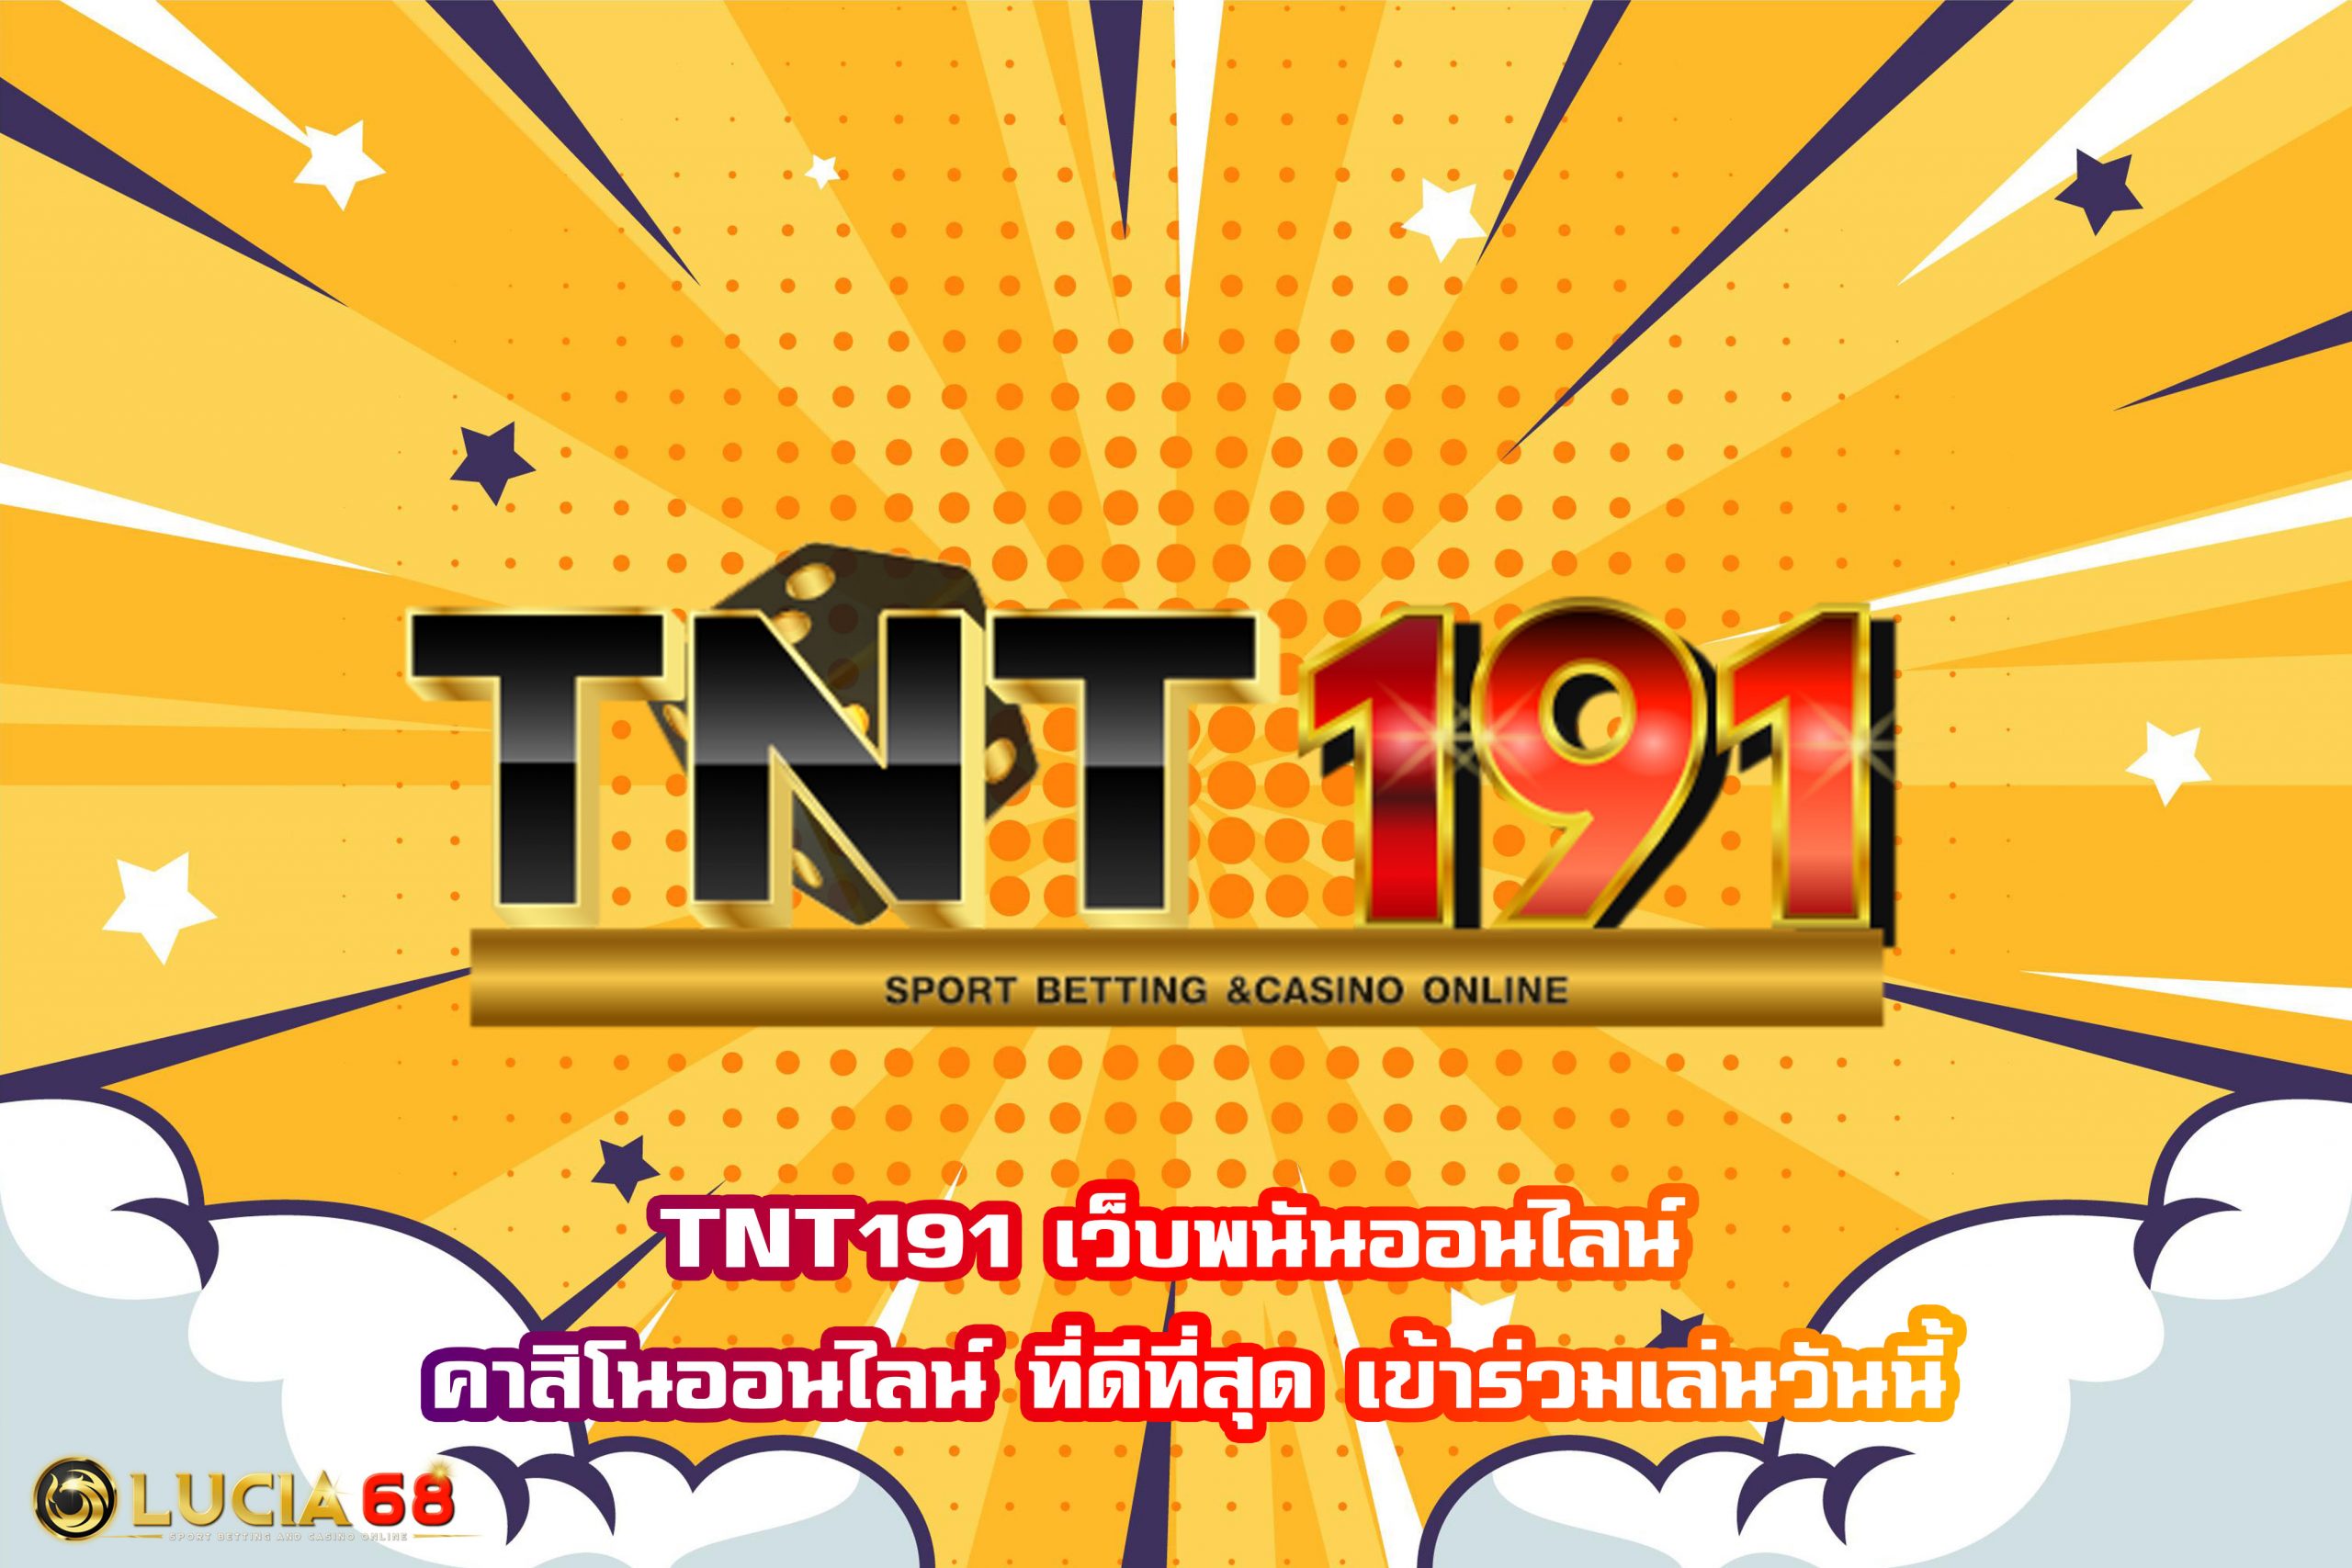 TNT191 เว็บพนันออนไลน์ คาสิโนออนไลน์ ที่ดีที่สุด เข้าร่วมเล่นวันนี้